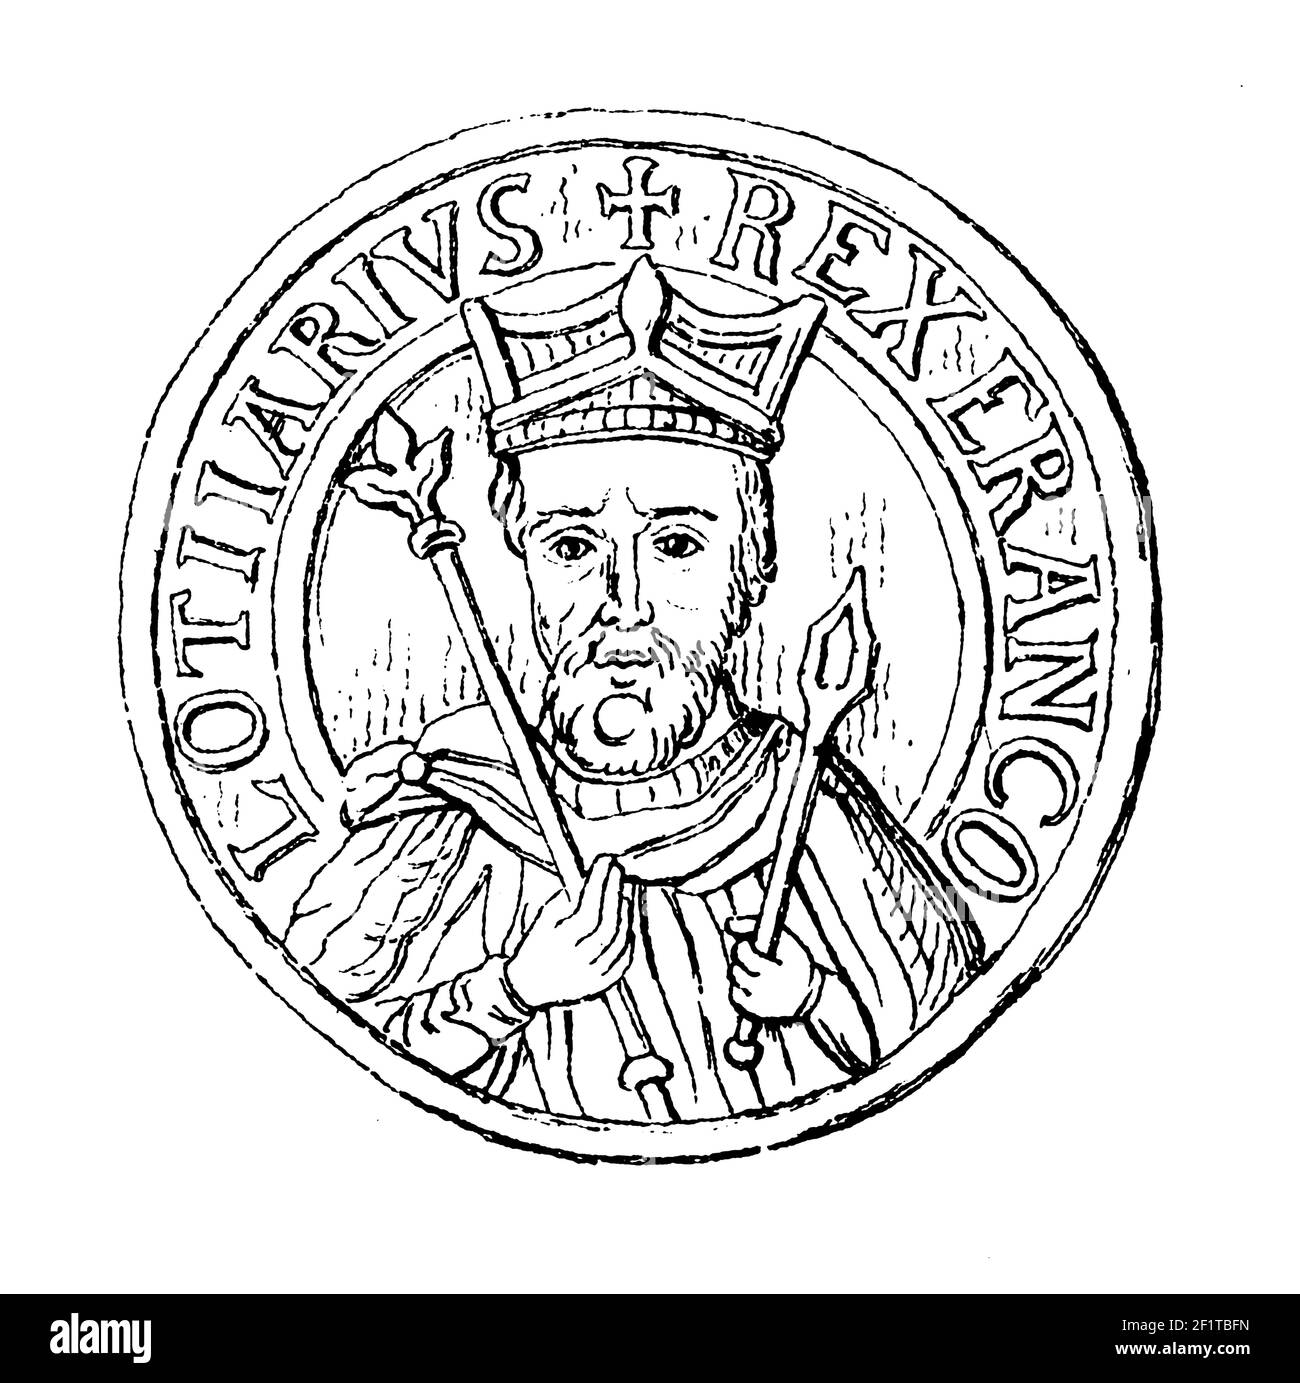 19th-Jahrhundert-Stich eines Porträts von Lothair, karolingischen König von West-Francia. Geboren 941, starb am 2. März 986 in Laon, Frankreich. Abbildung Stockfoto